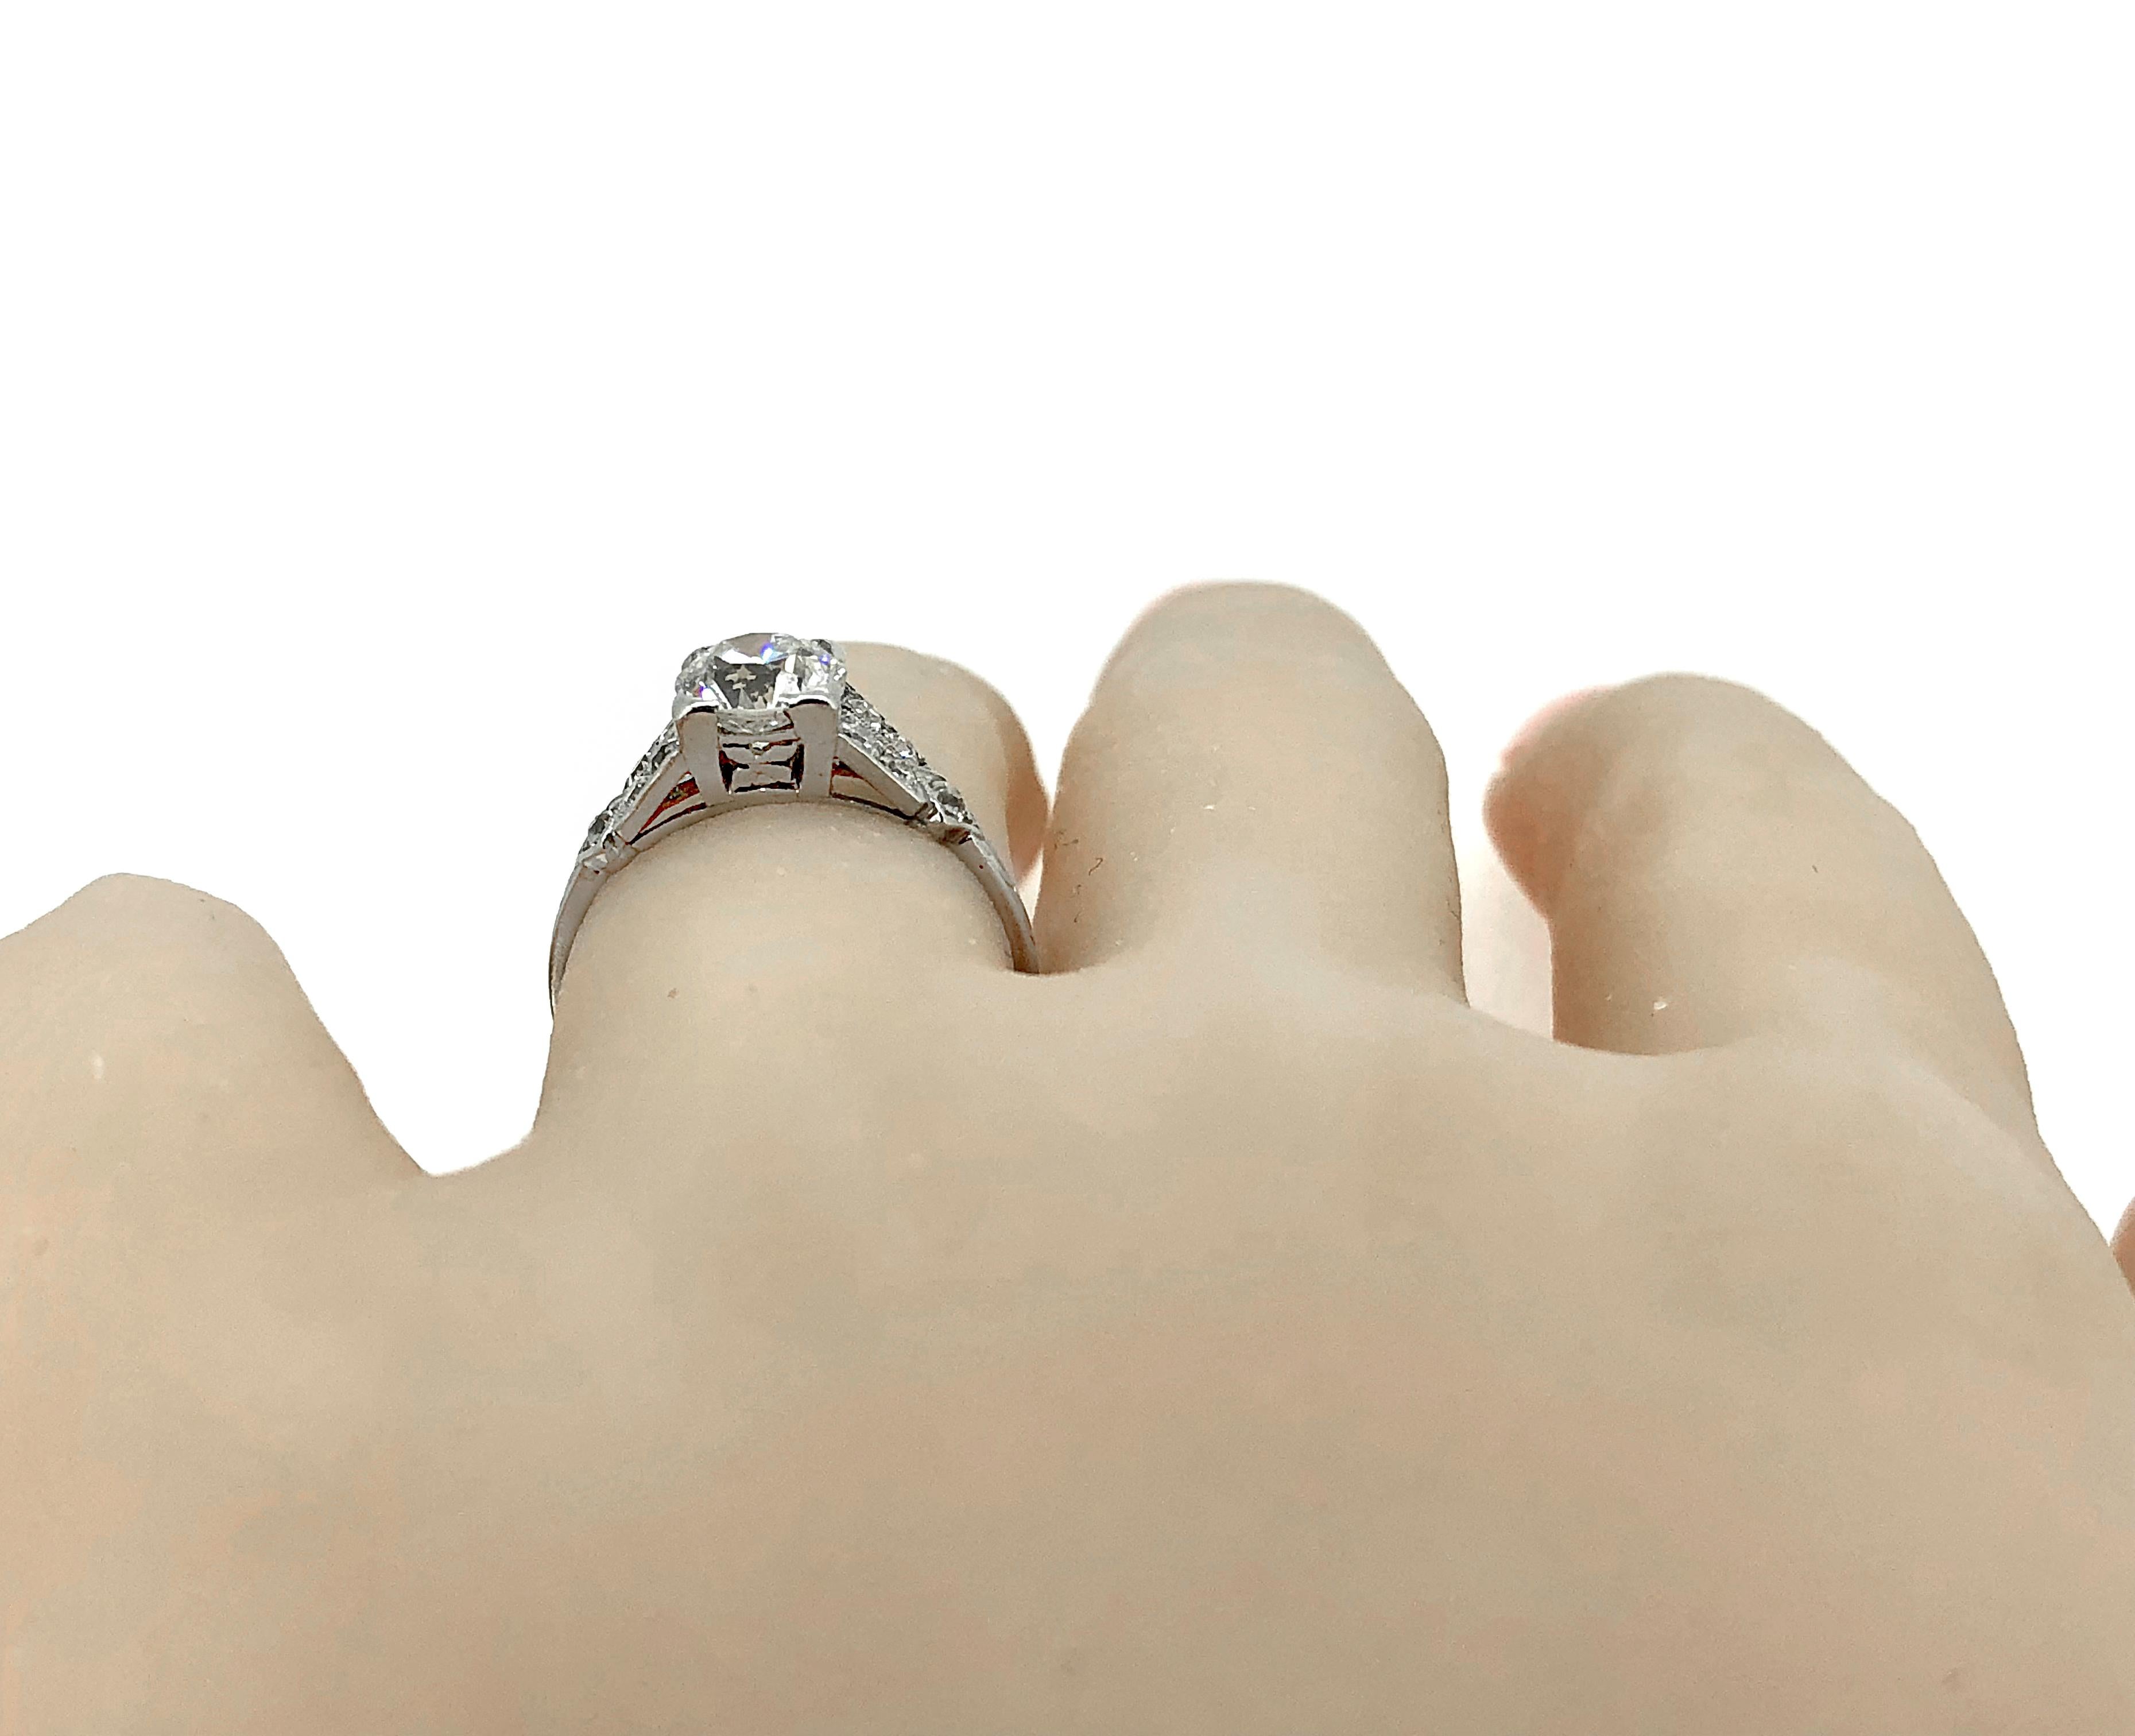 Women's Antique Engagement Ring 1.55 Carat Diamond & 18K White Gold Edwardian